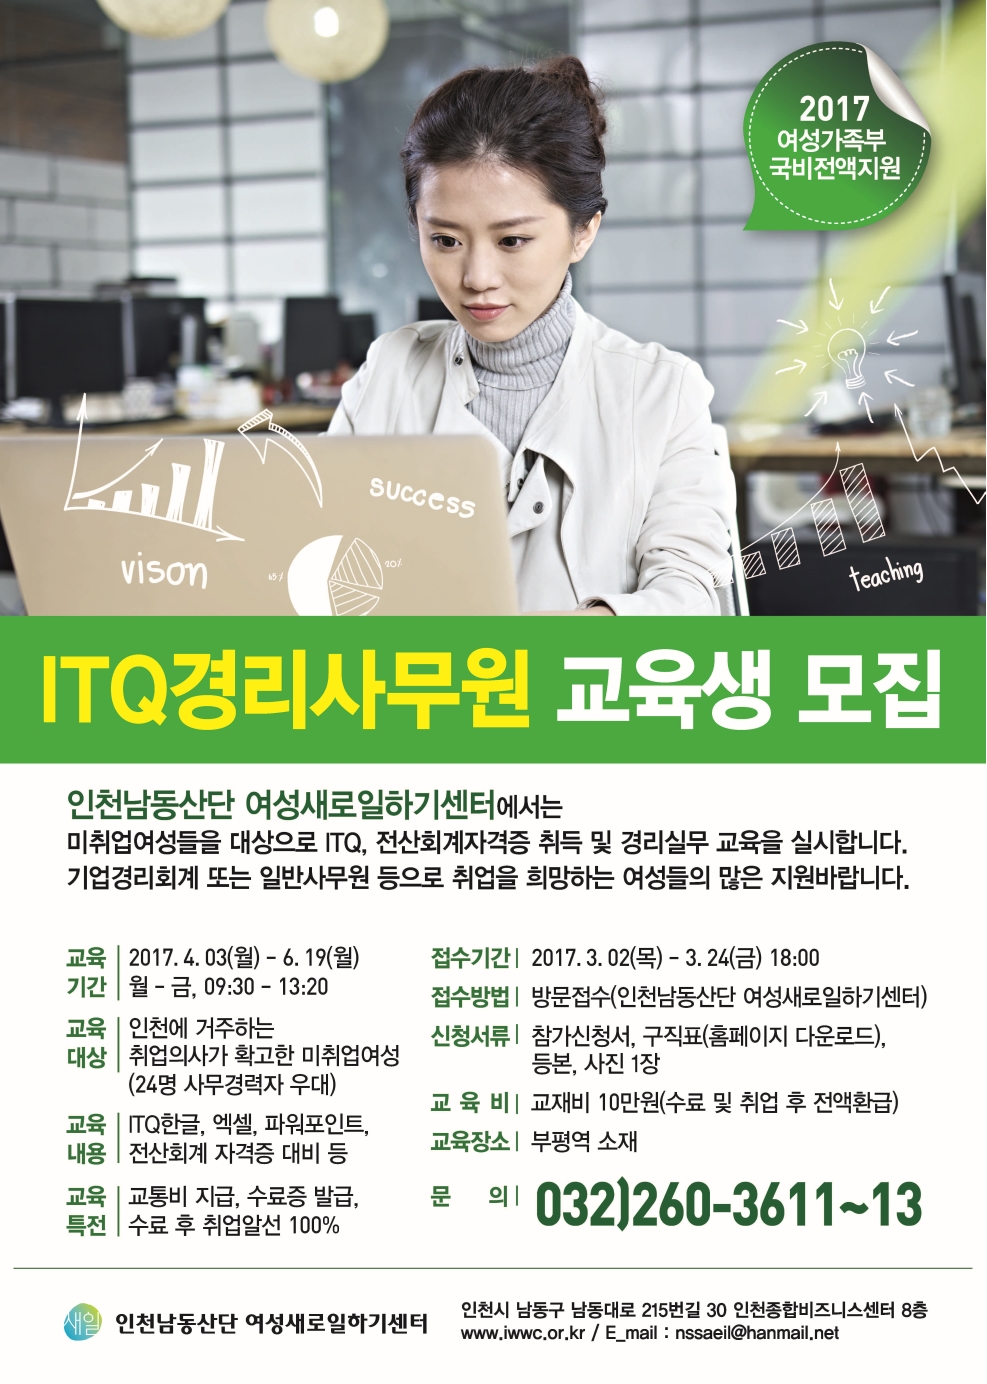 인천남동산단 여성새로일하기센터-ITQ경리사무원 교육생 모집의 1번째 이미지